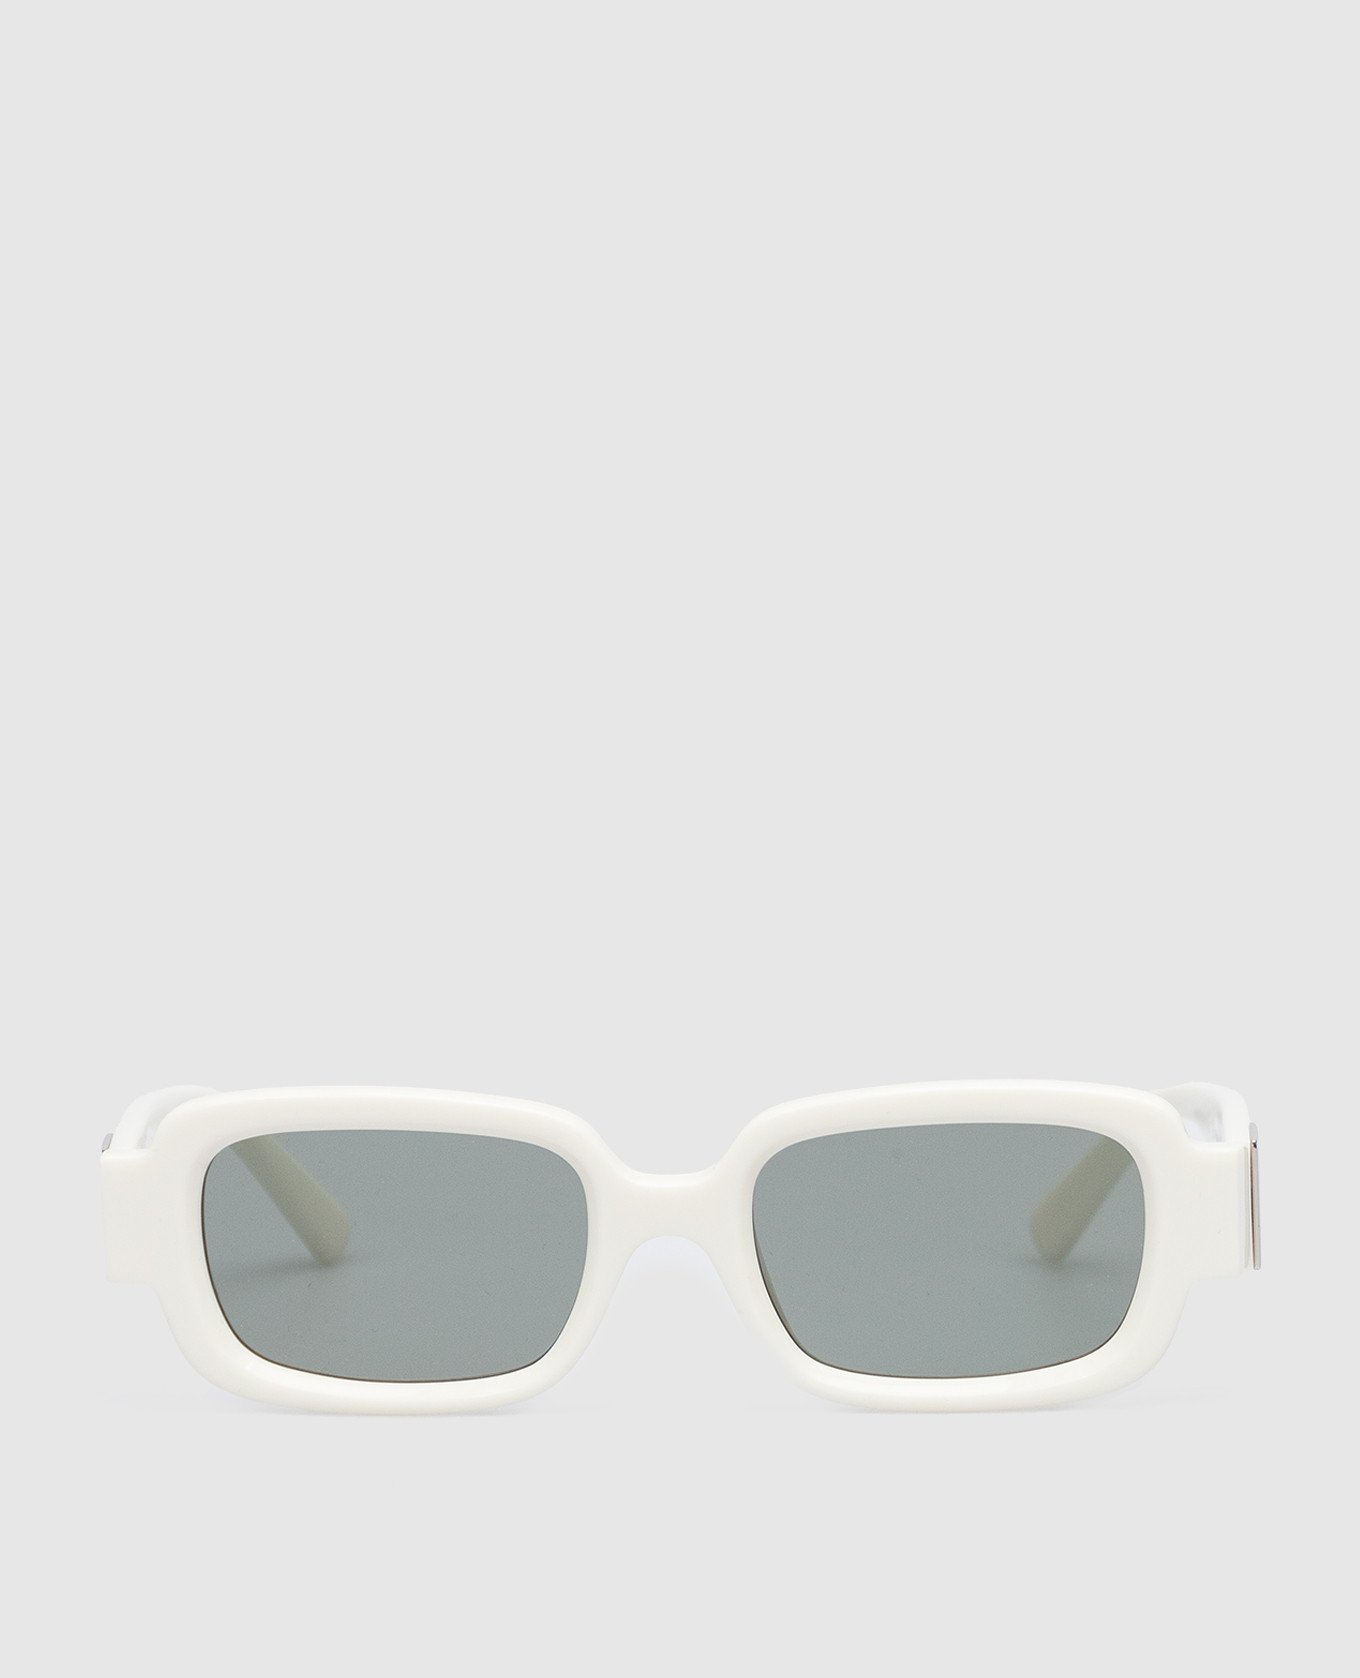 Белые очки Thia с фактурным логотипом.